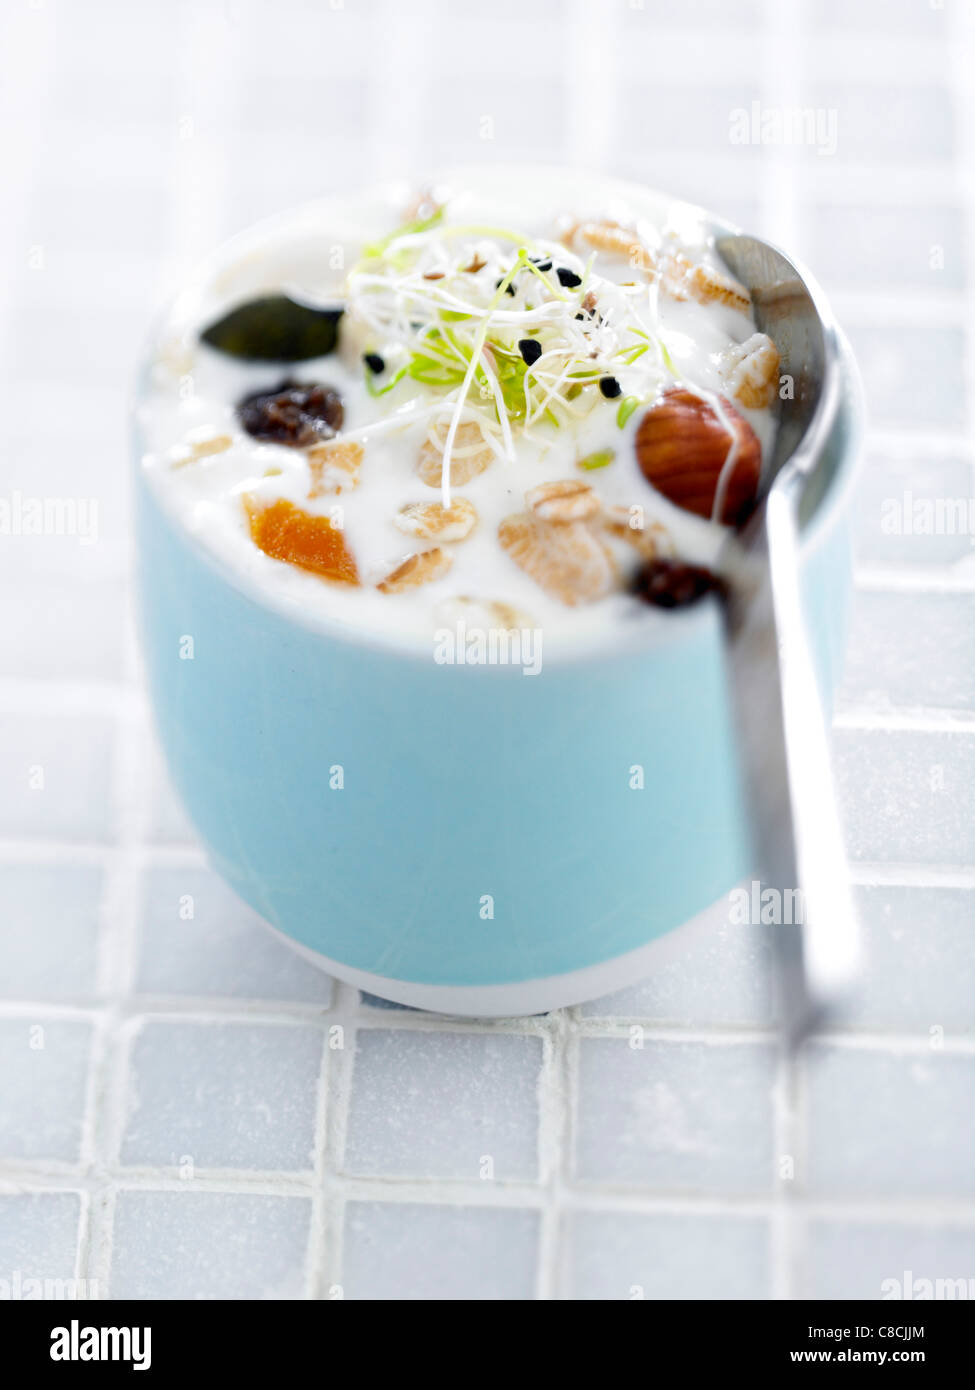 Creamy meusli with baby shoots Stock Photo